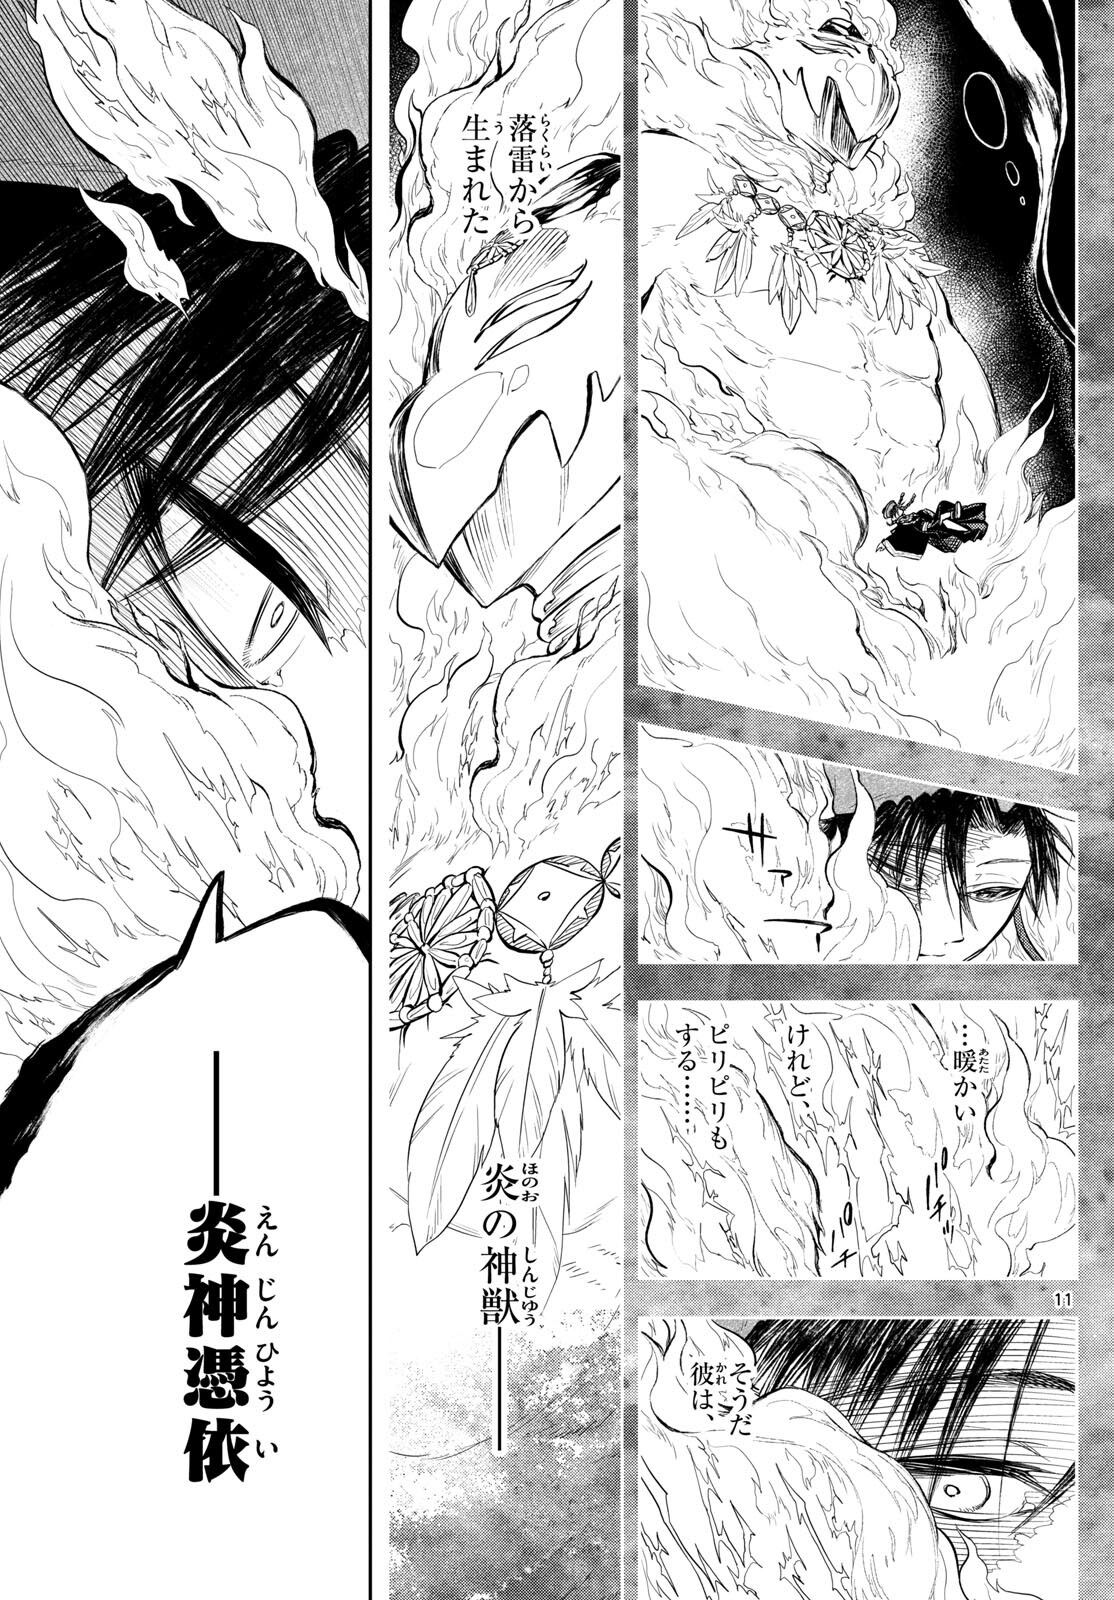 Akatsuki Jihen - Chapter 44 - Page 11